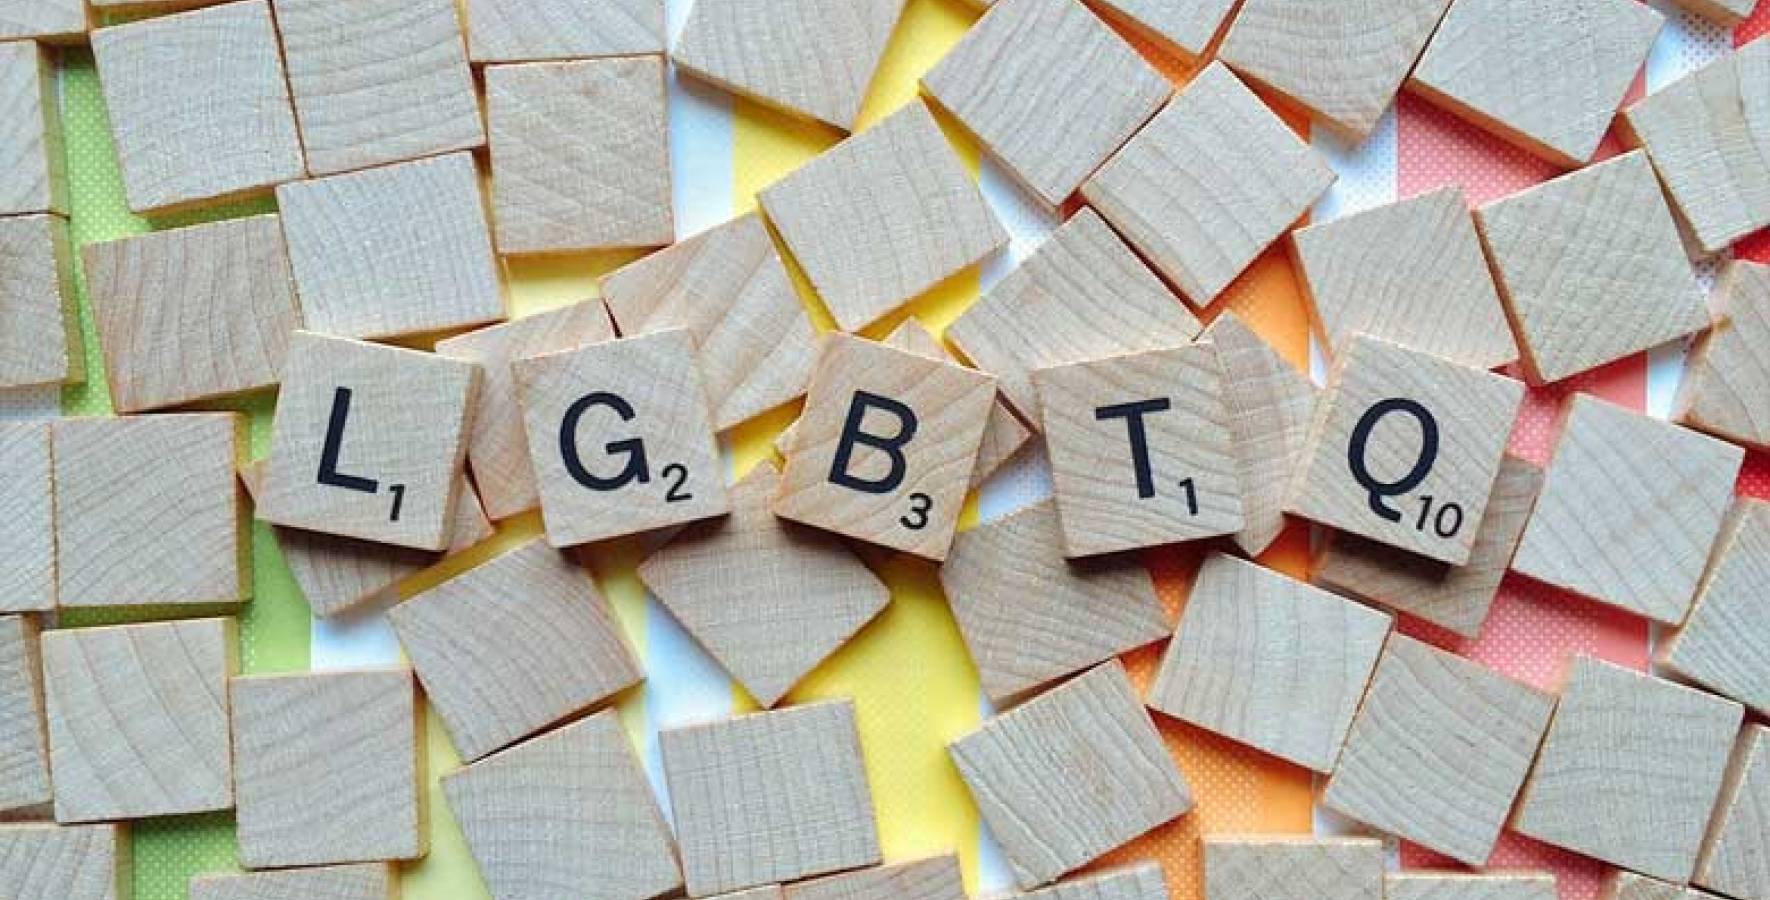 Quelle est la signification de LGBTQ+ ?